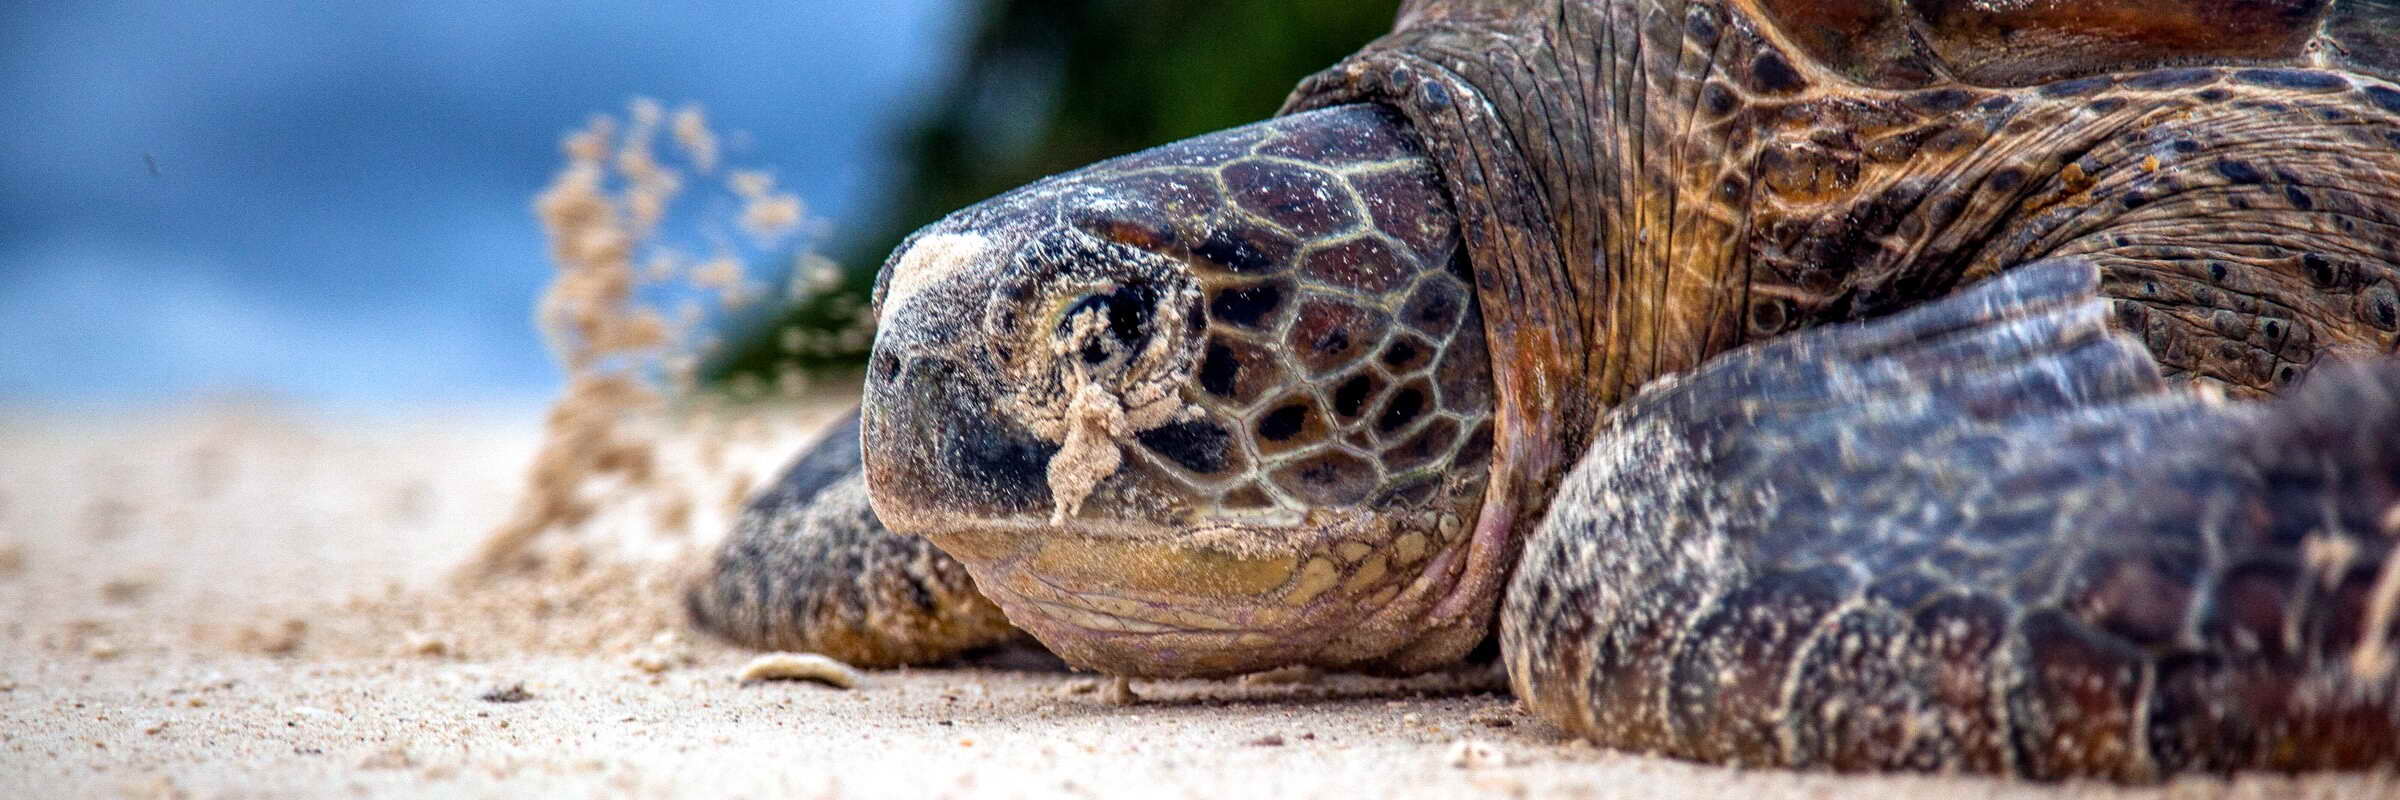 Die vielen abgelegenen Inseln in der Sulu-See dienen oft als Nistplätze für Meeresschildkröten.